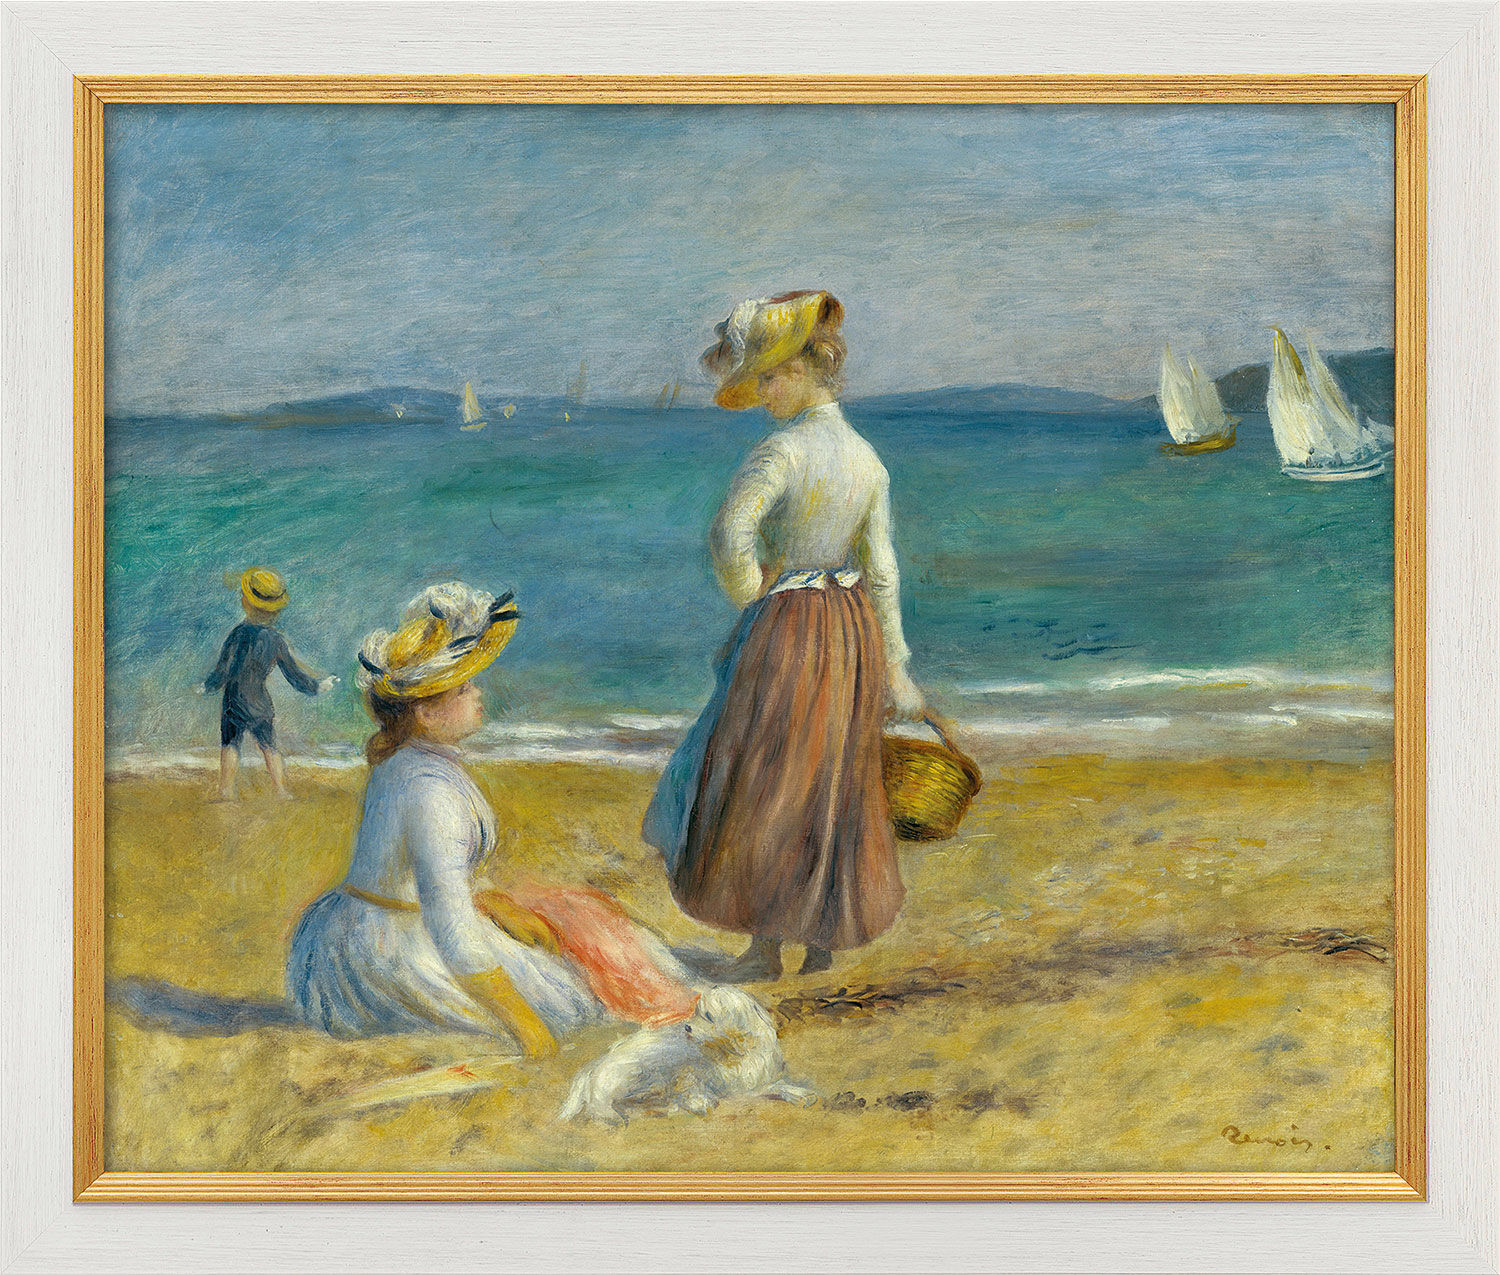 Bild "Zwei Frauen am Strand" (1890), gerahmt von Auguste Renoir